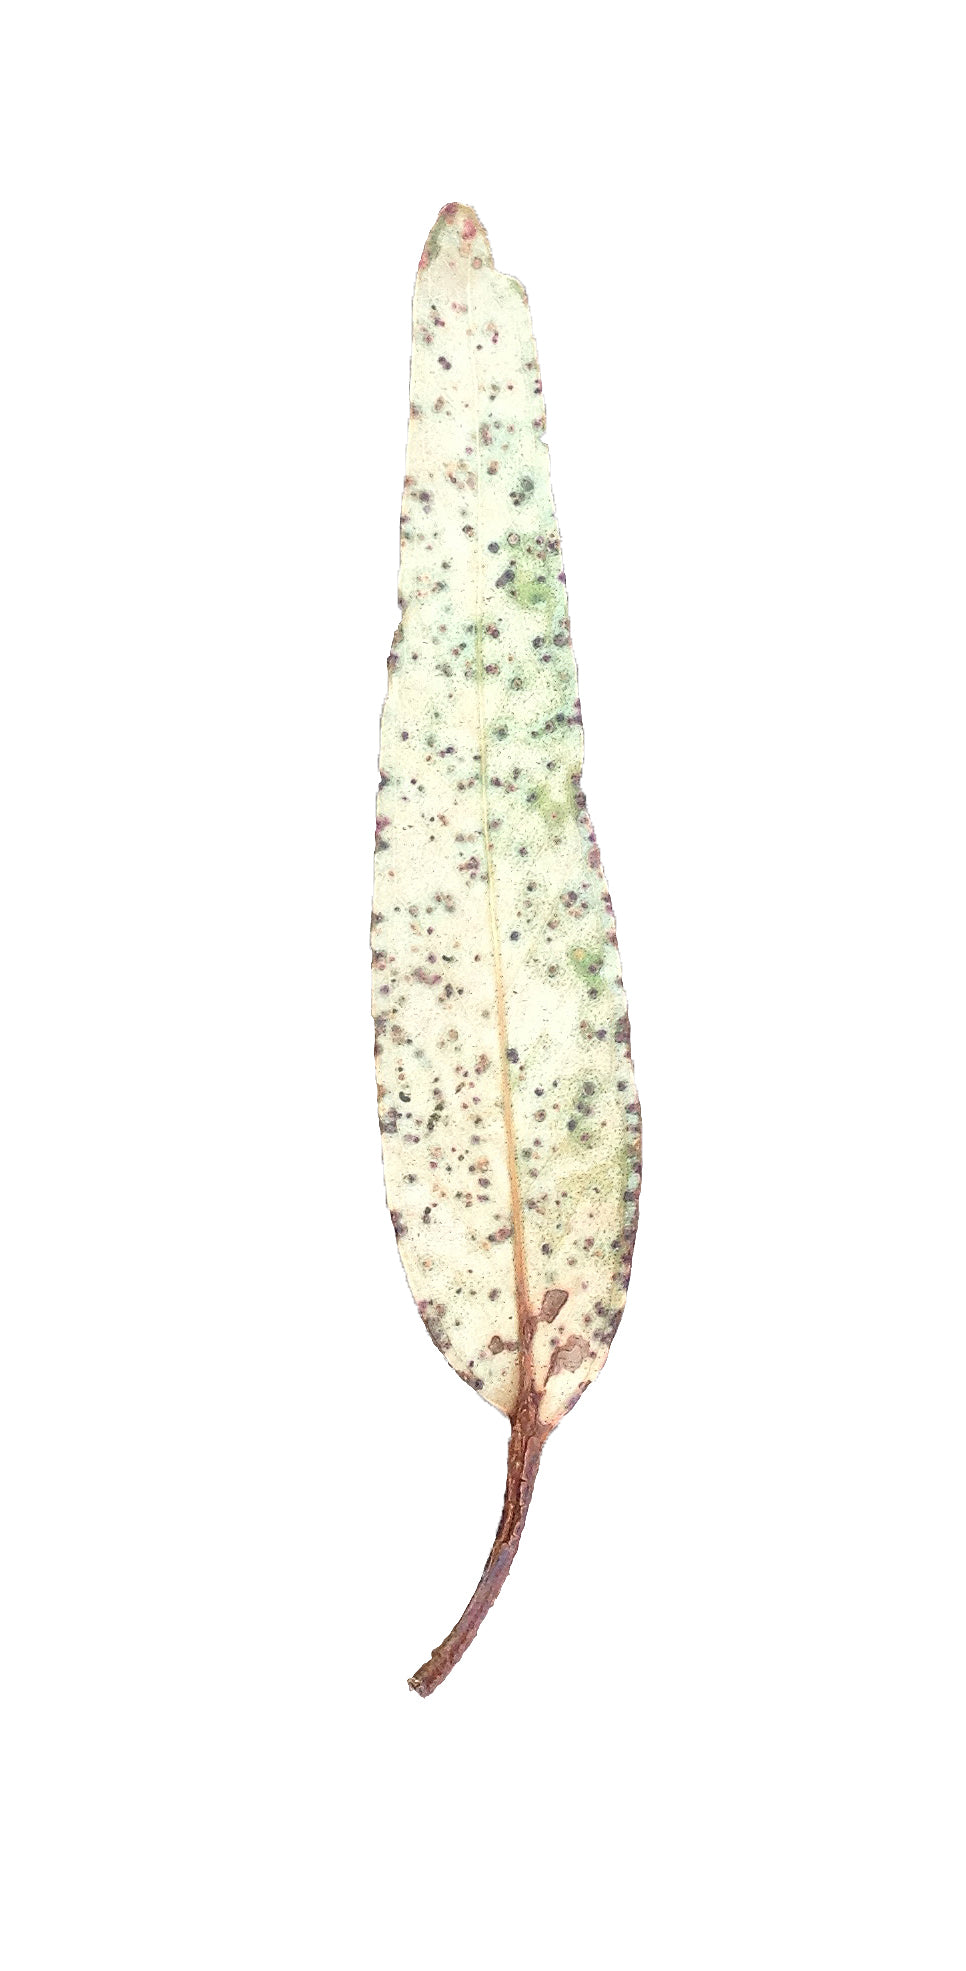 Australian Gum Leaf Motifs